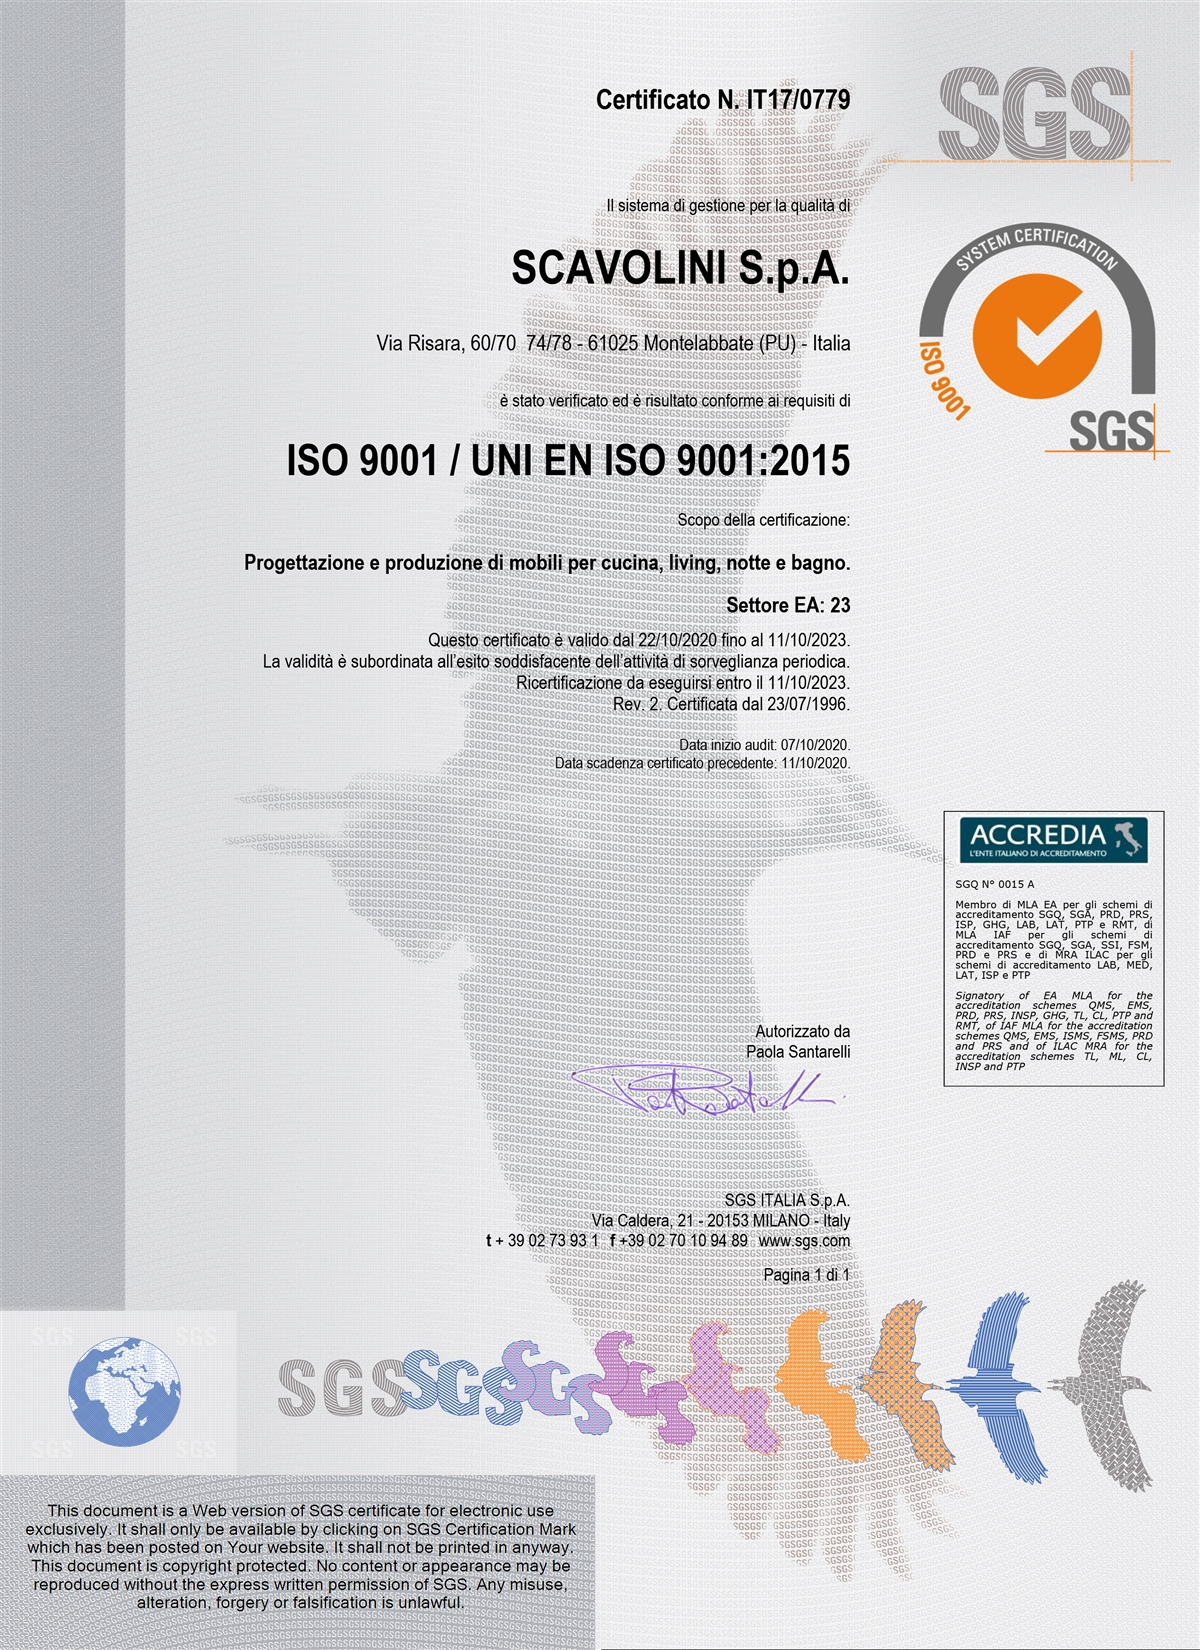 Certificazione Sistema Qualità ISO 9001